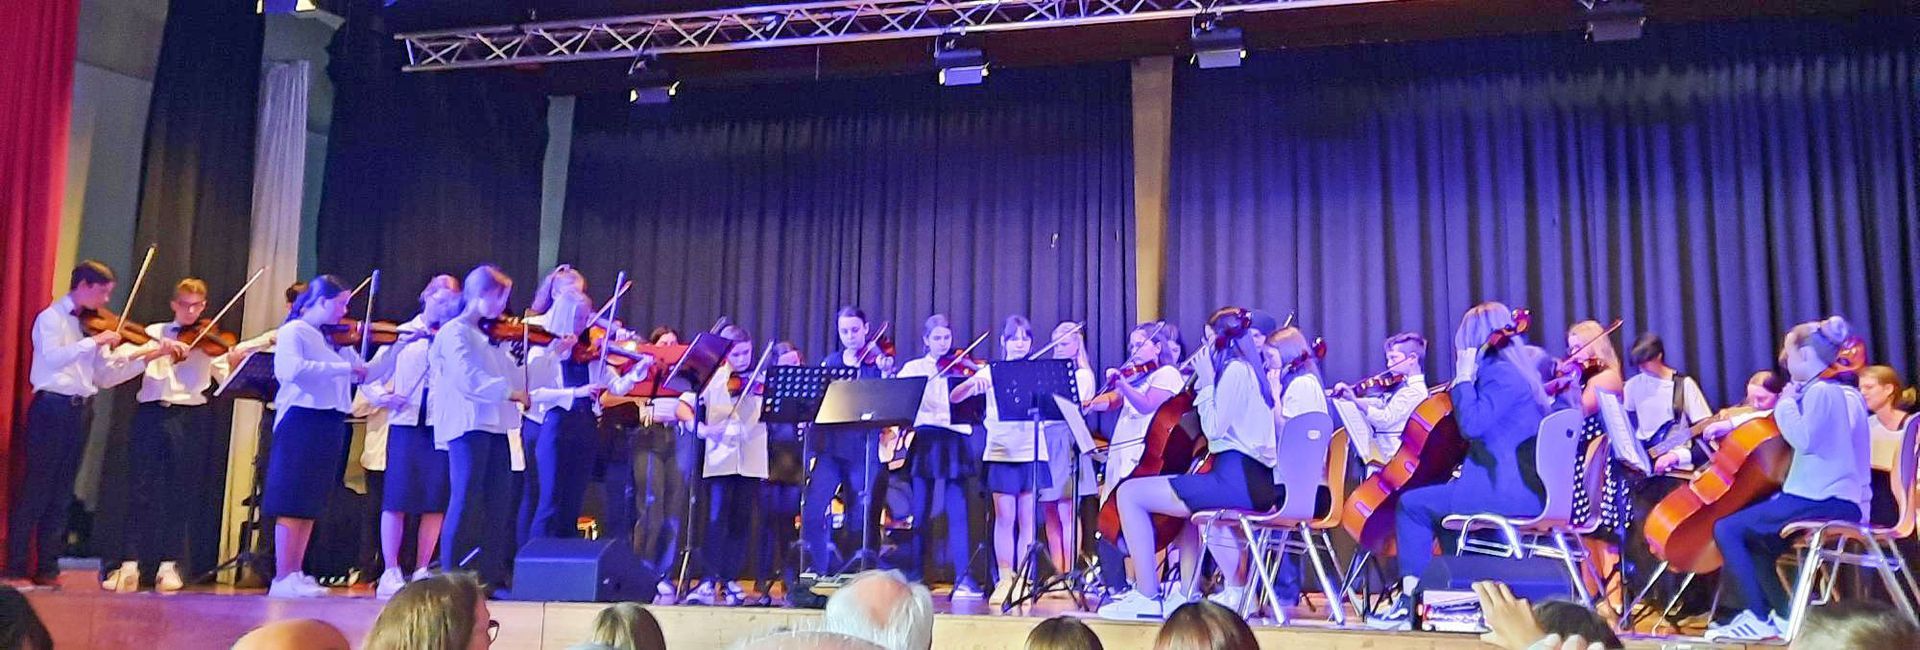 Sommerkonzert der Realschule Aspe: Ein musikalisches Fest der Begeisterung